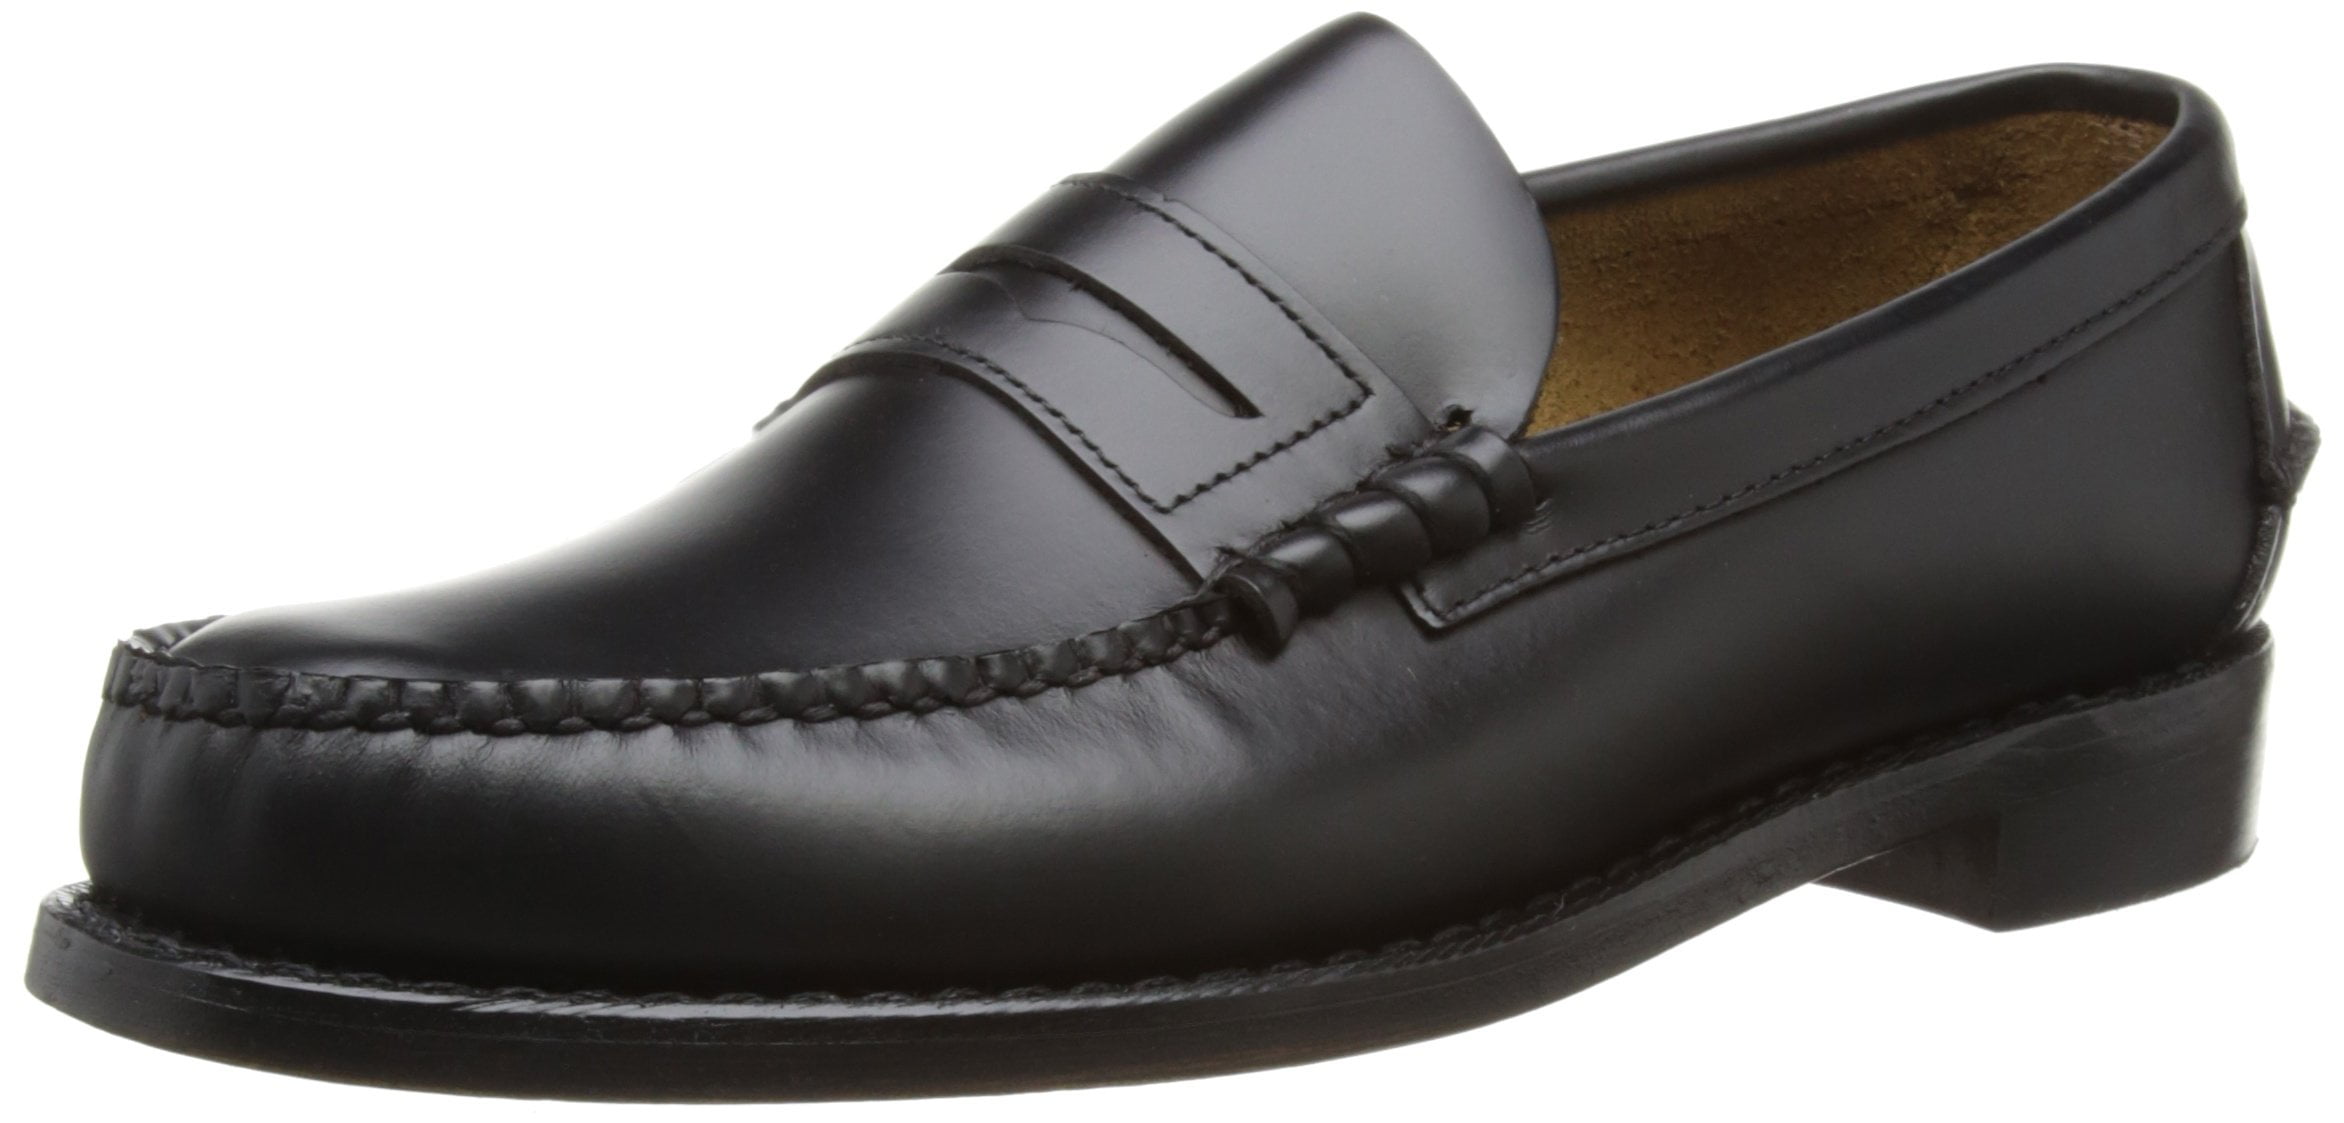 Sebago Classic Dan Shoes Black - 902 - Walmart.com